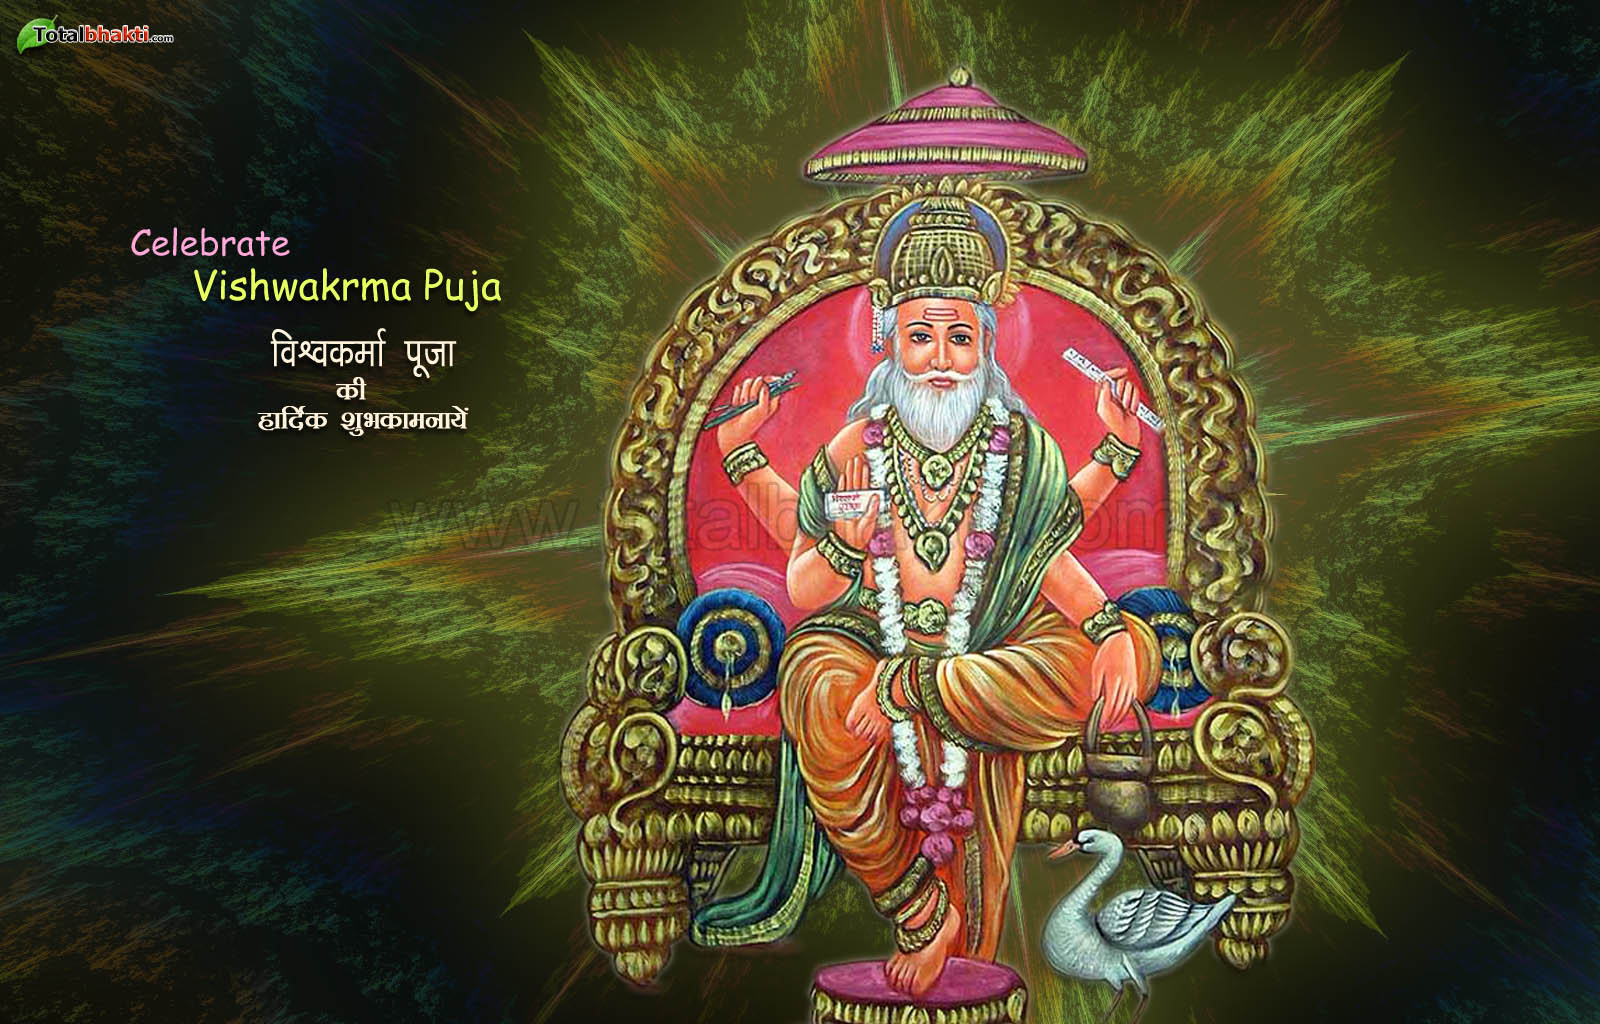 felice vishwakarma puja wallpaper,testo,arte,tempio,mitologia,illustrazione